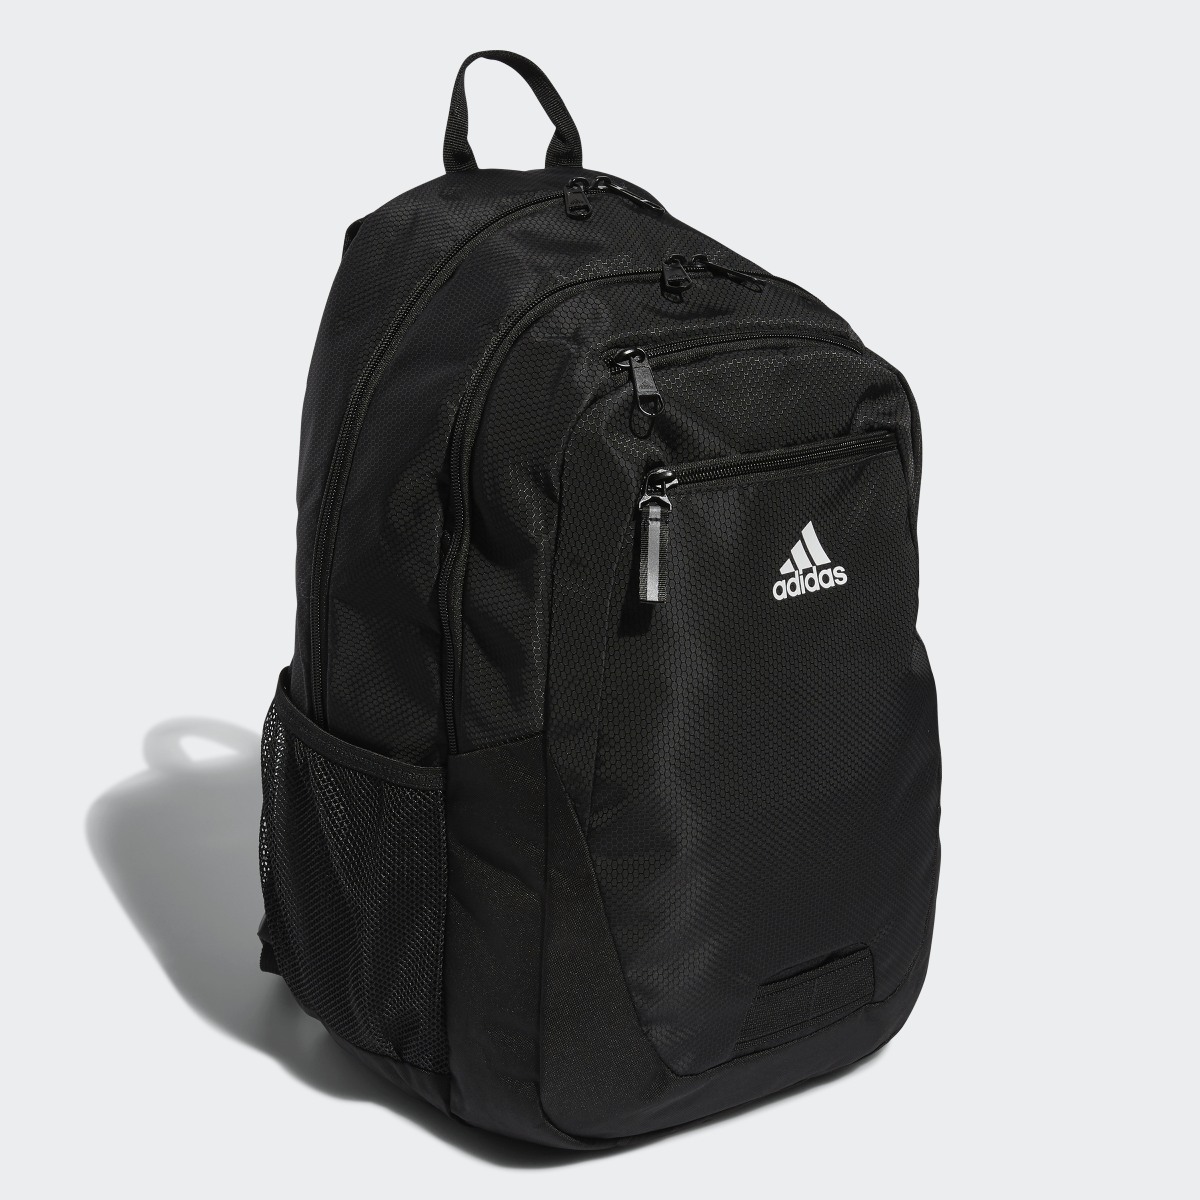 Adidas Foundation 6 Backpack. 4